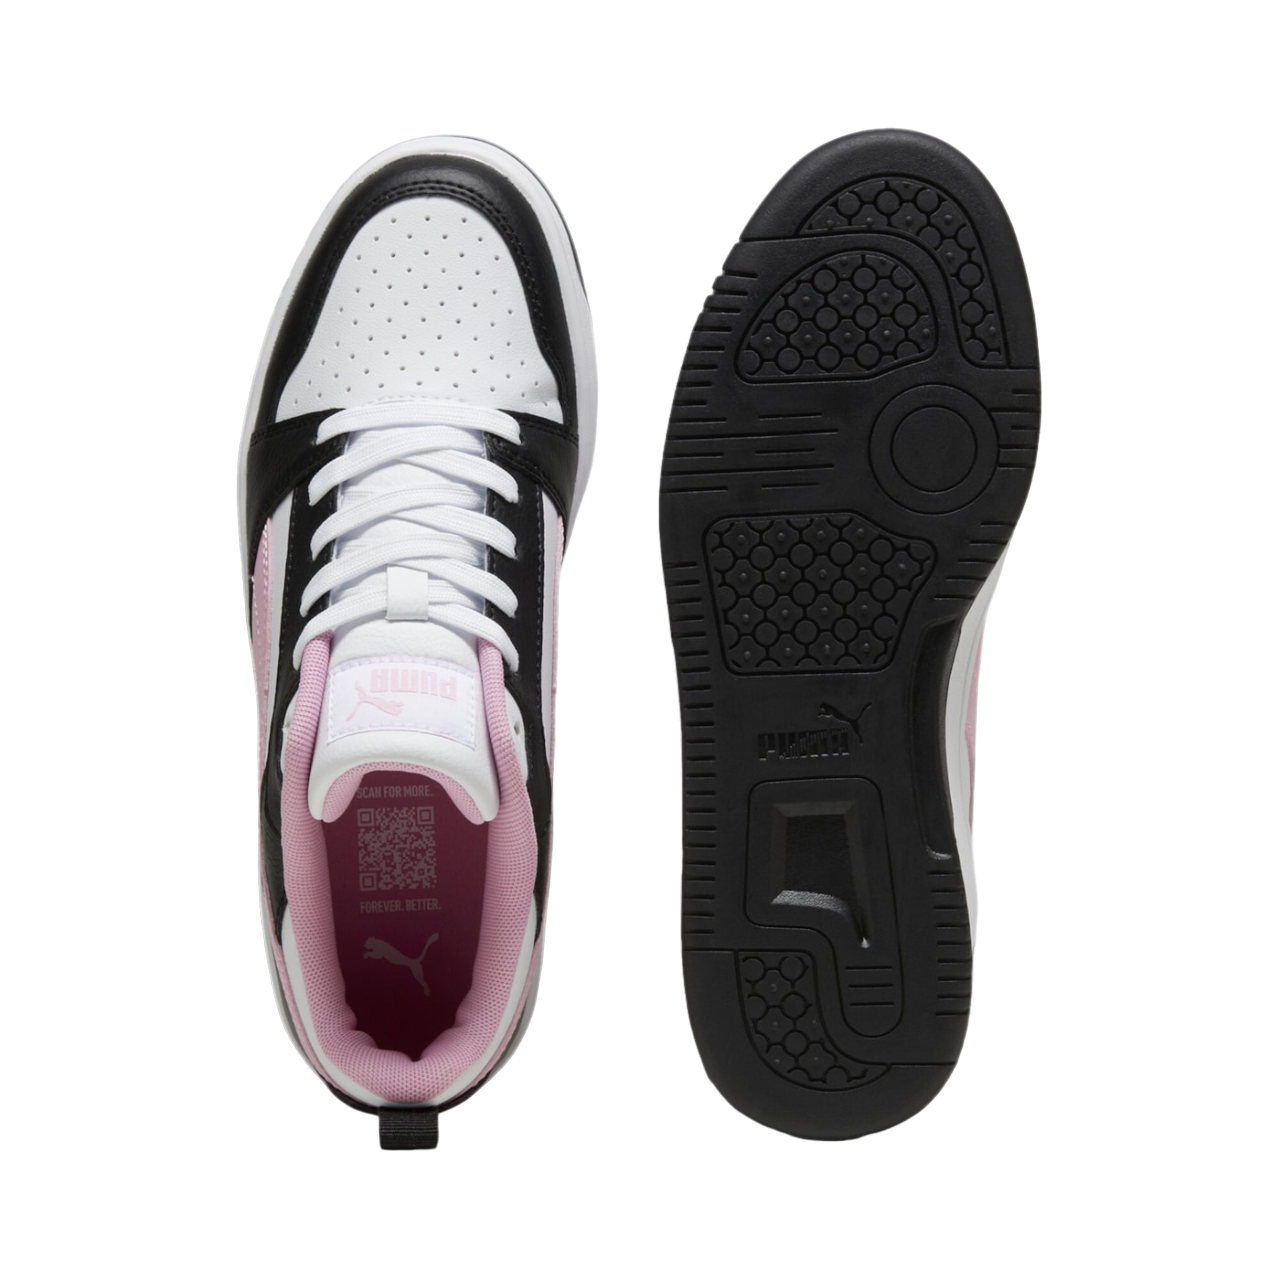 Puma scarpa sneakers da donna Rebound v6 Low 392328-19 bianco-nero-rosa